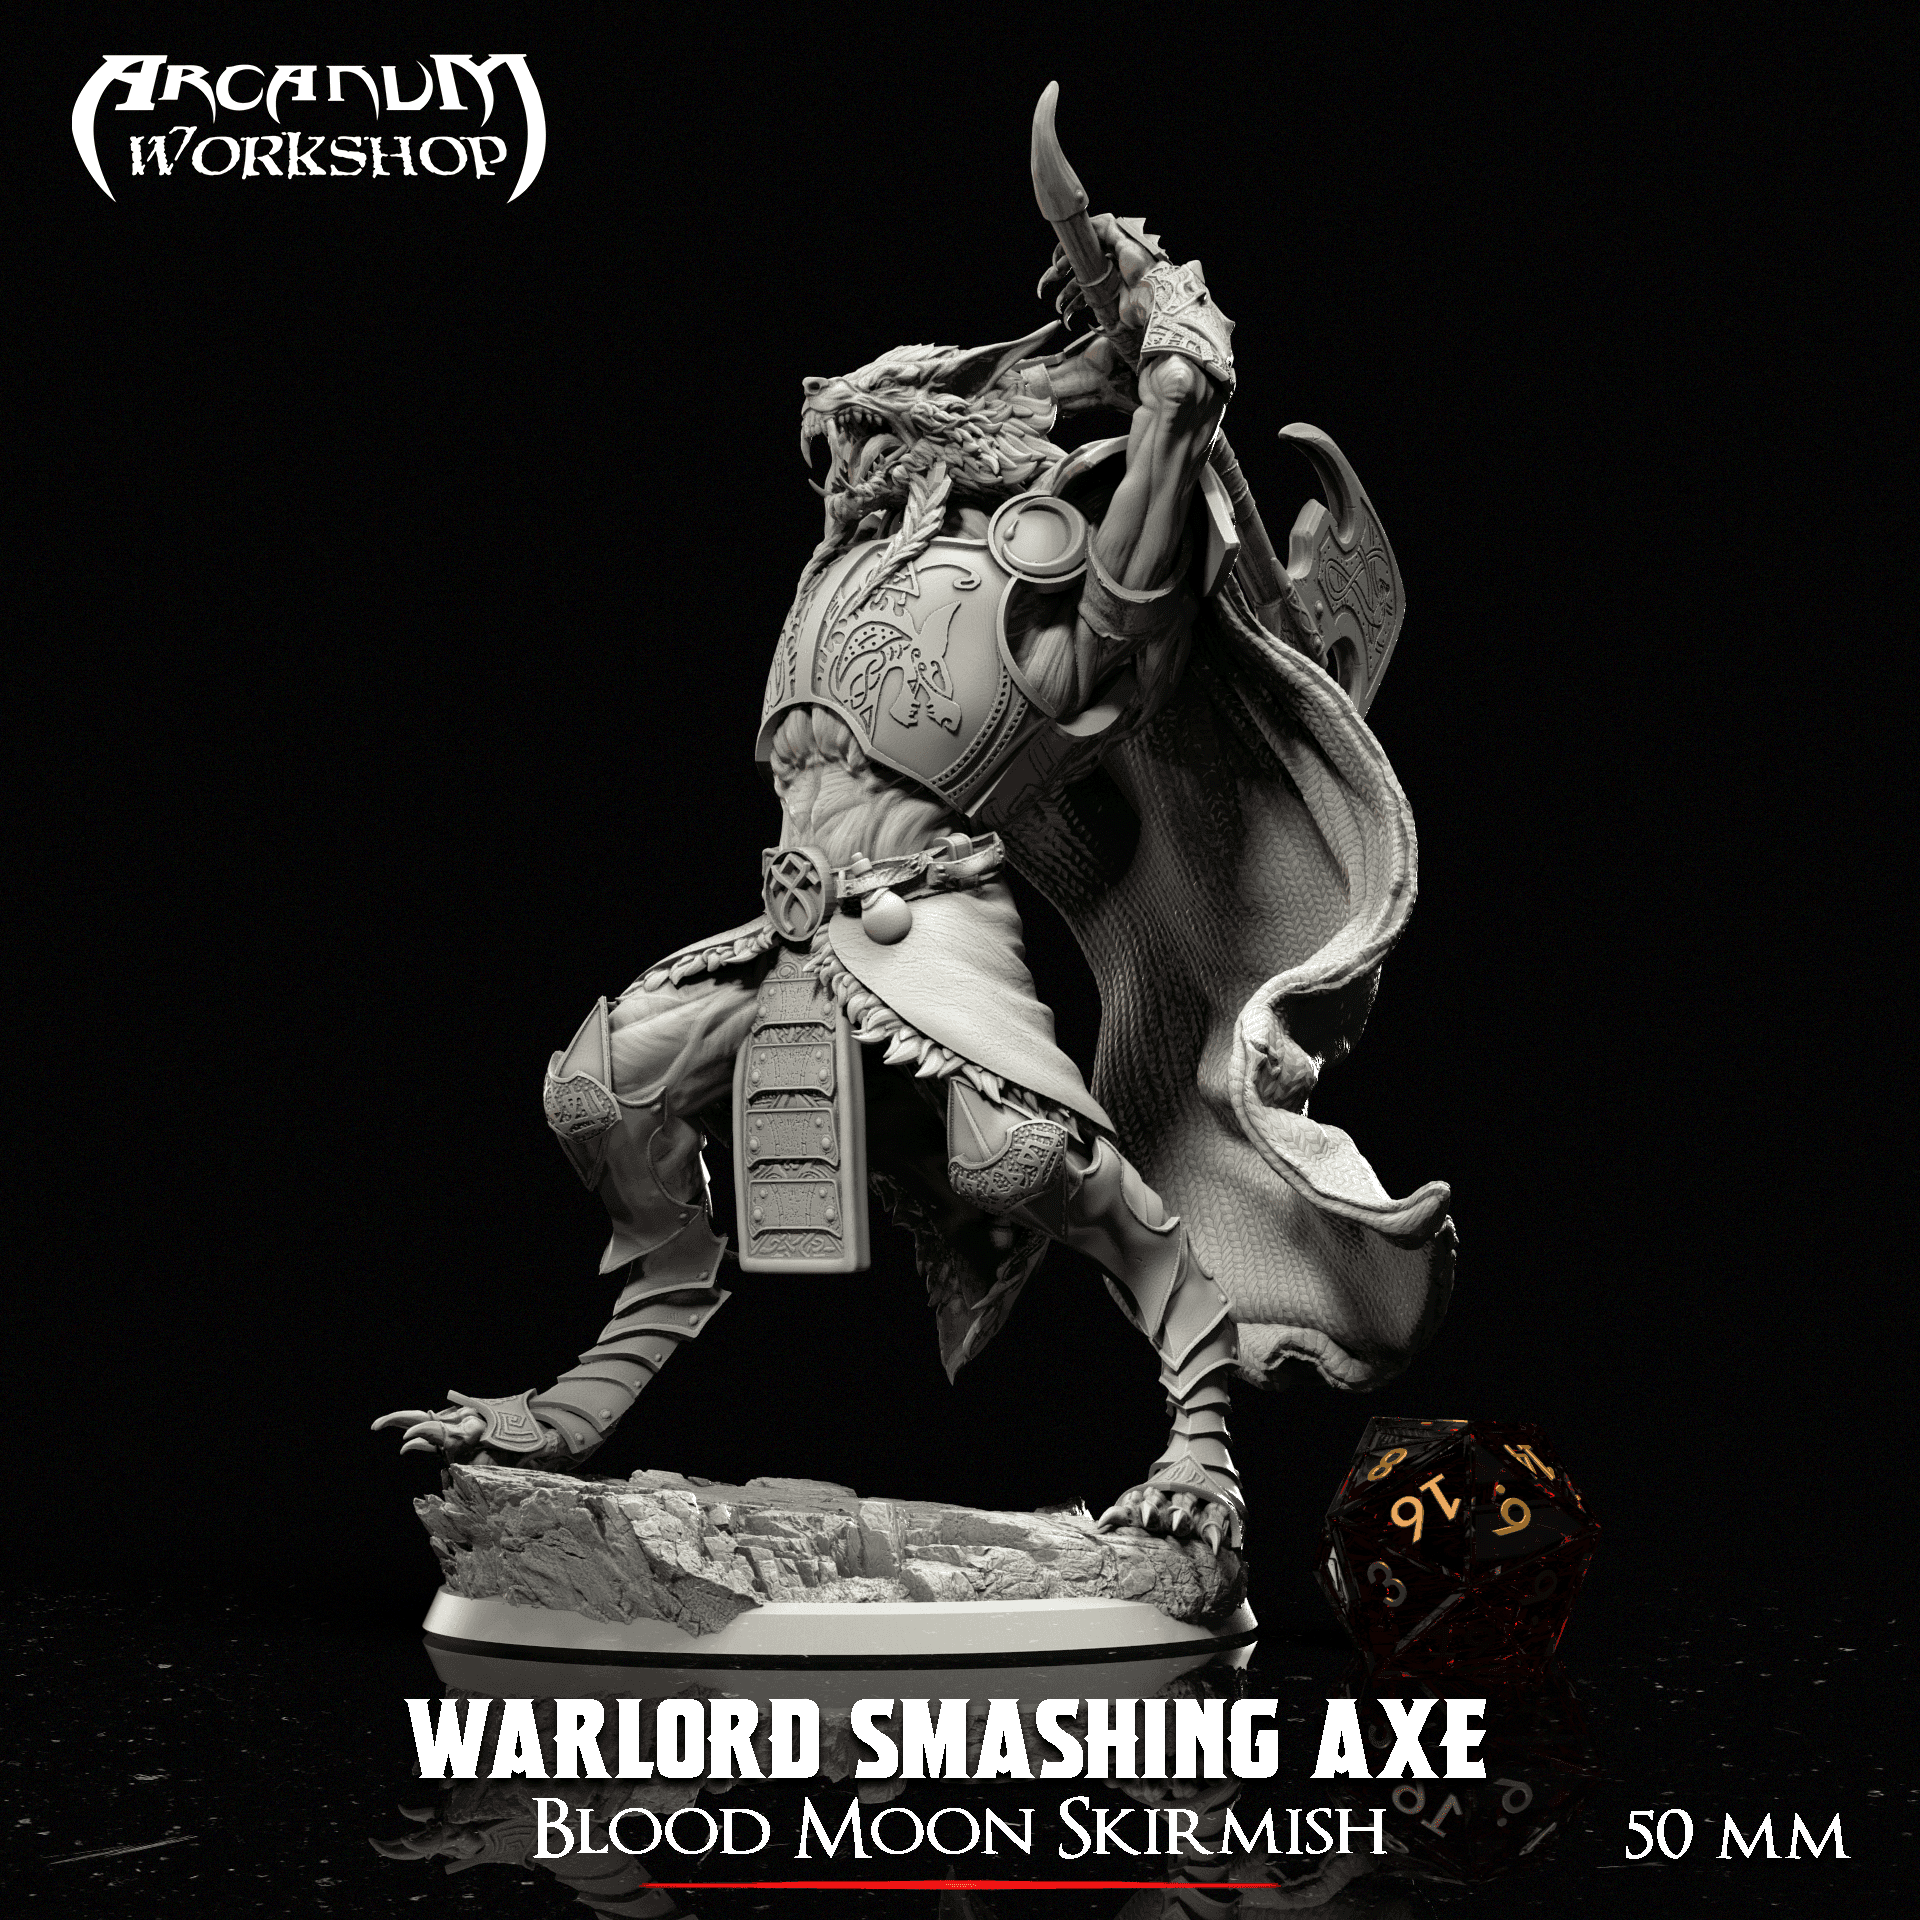 Werewolf Smashing Axe( 50mm) 3d model